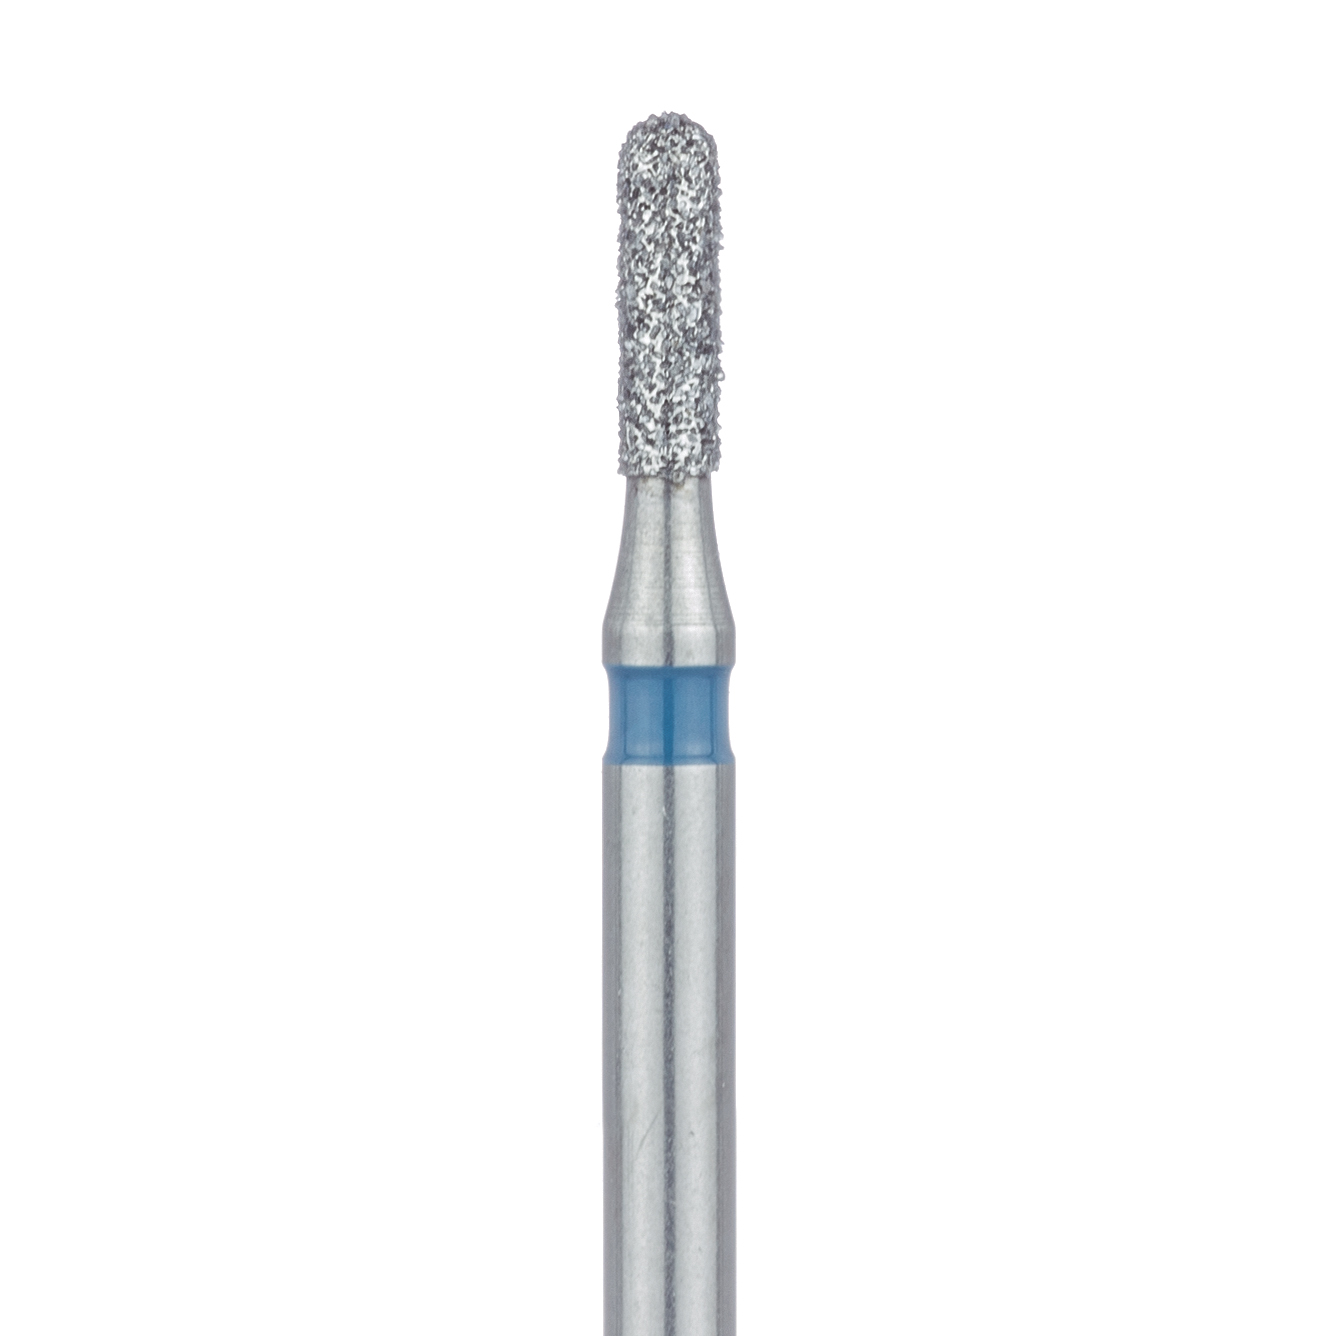 838-012-FG Round End Cylinder Diamond Bur, 1.2mm Ø, Medium, FG